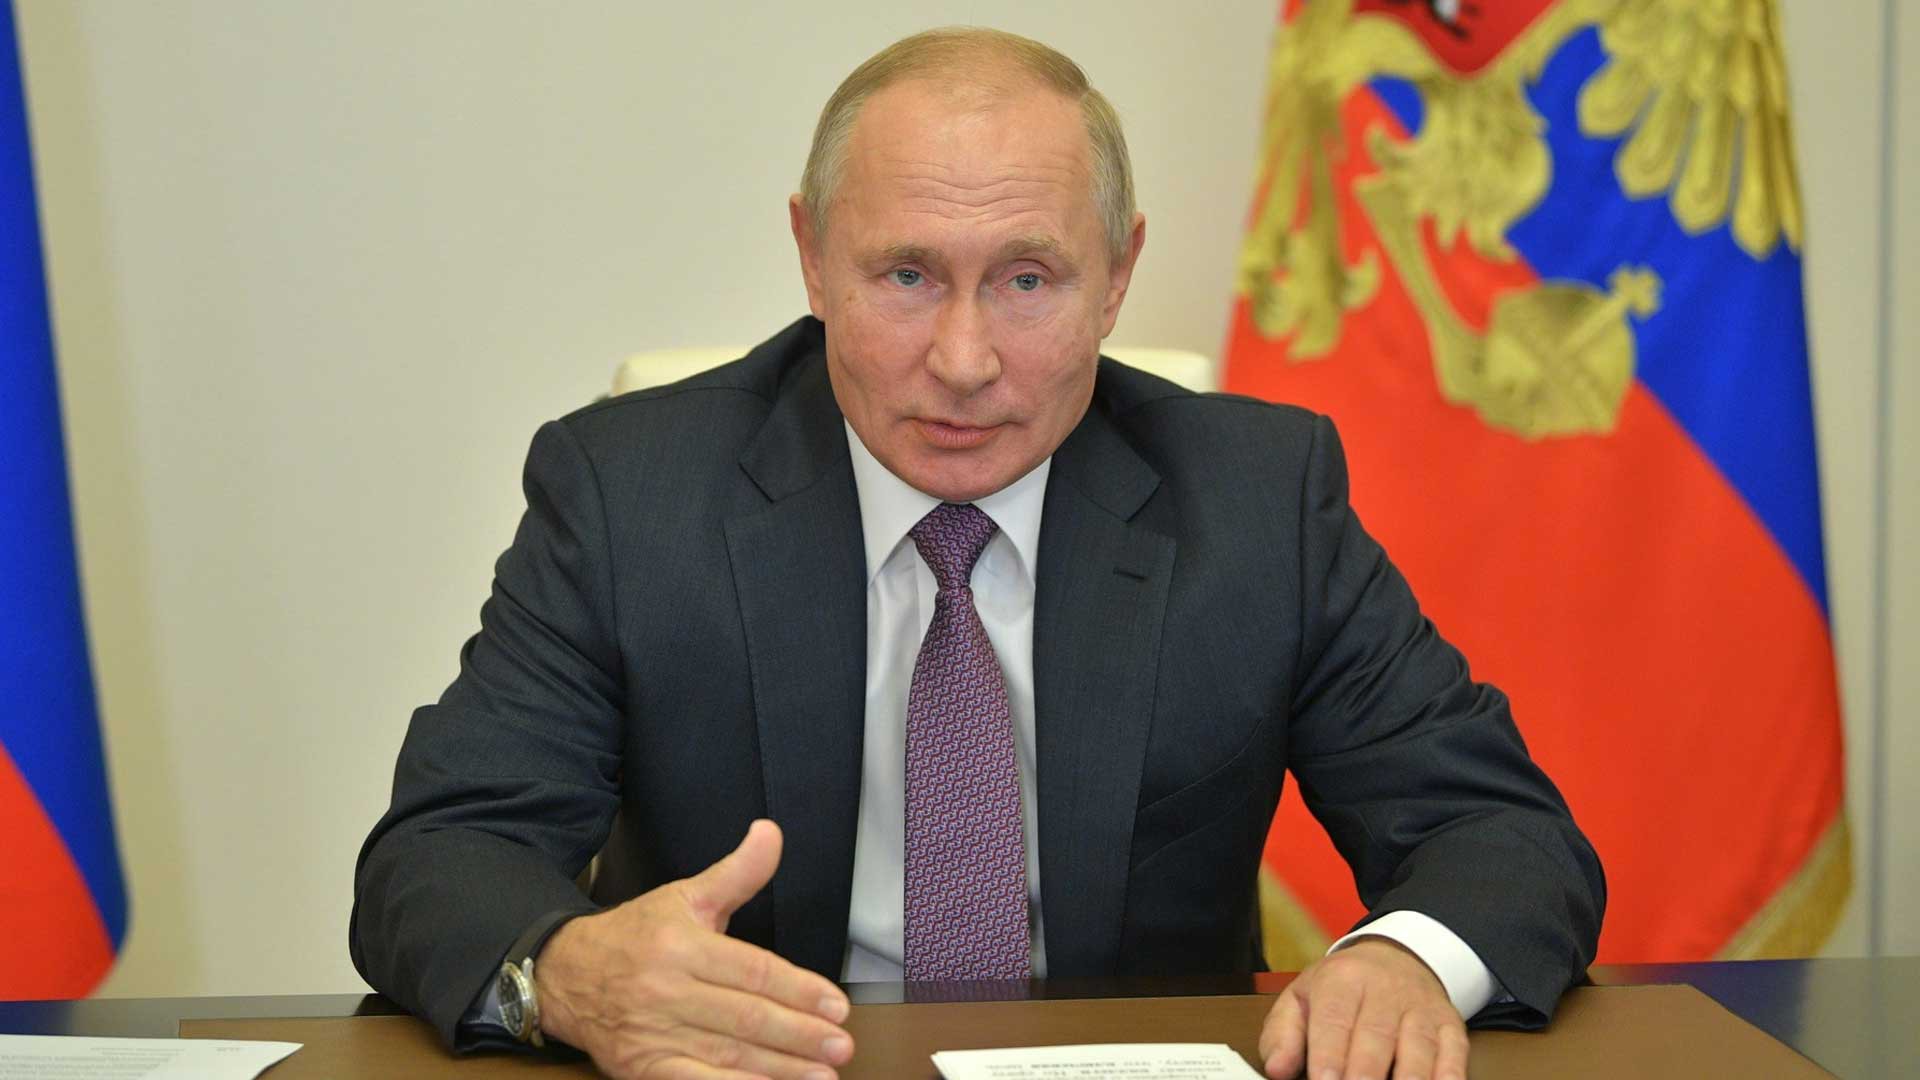 Dailystorm - Путин признался, что верит в судьбу и возможность ее изменить